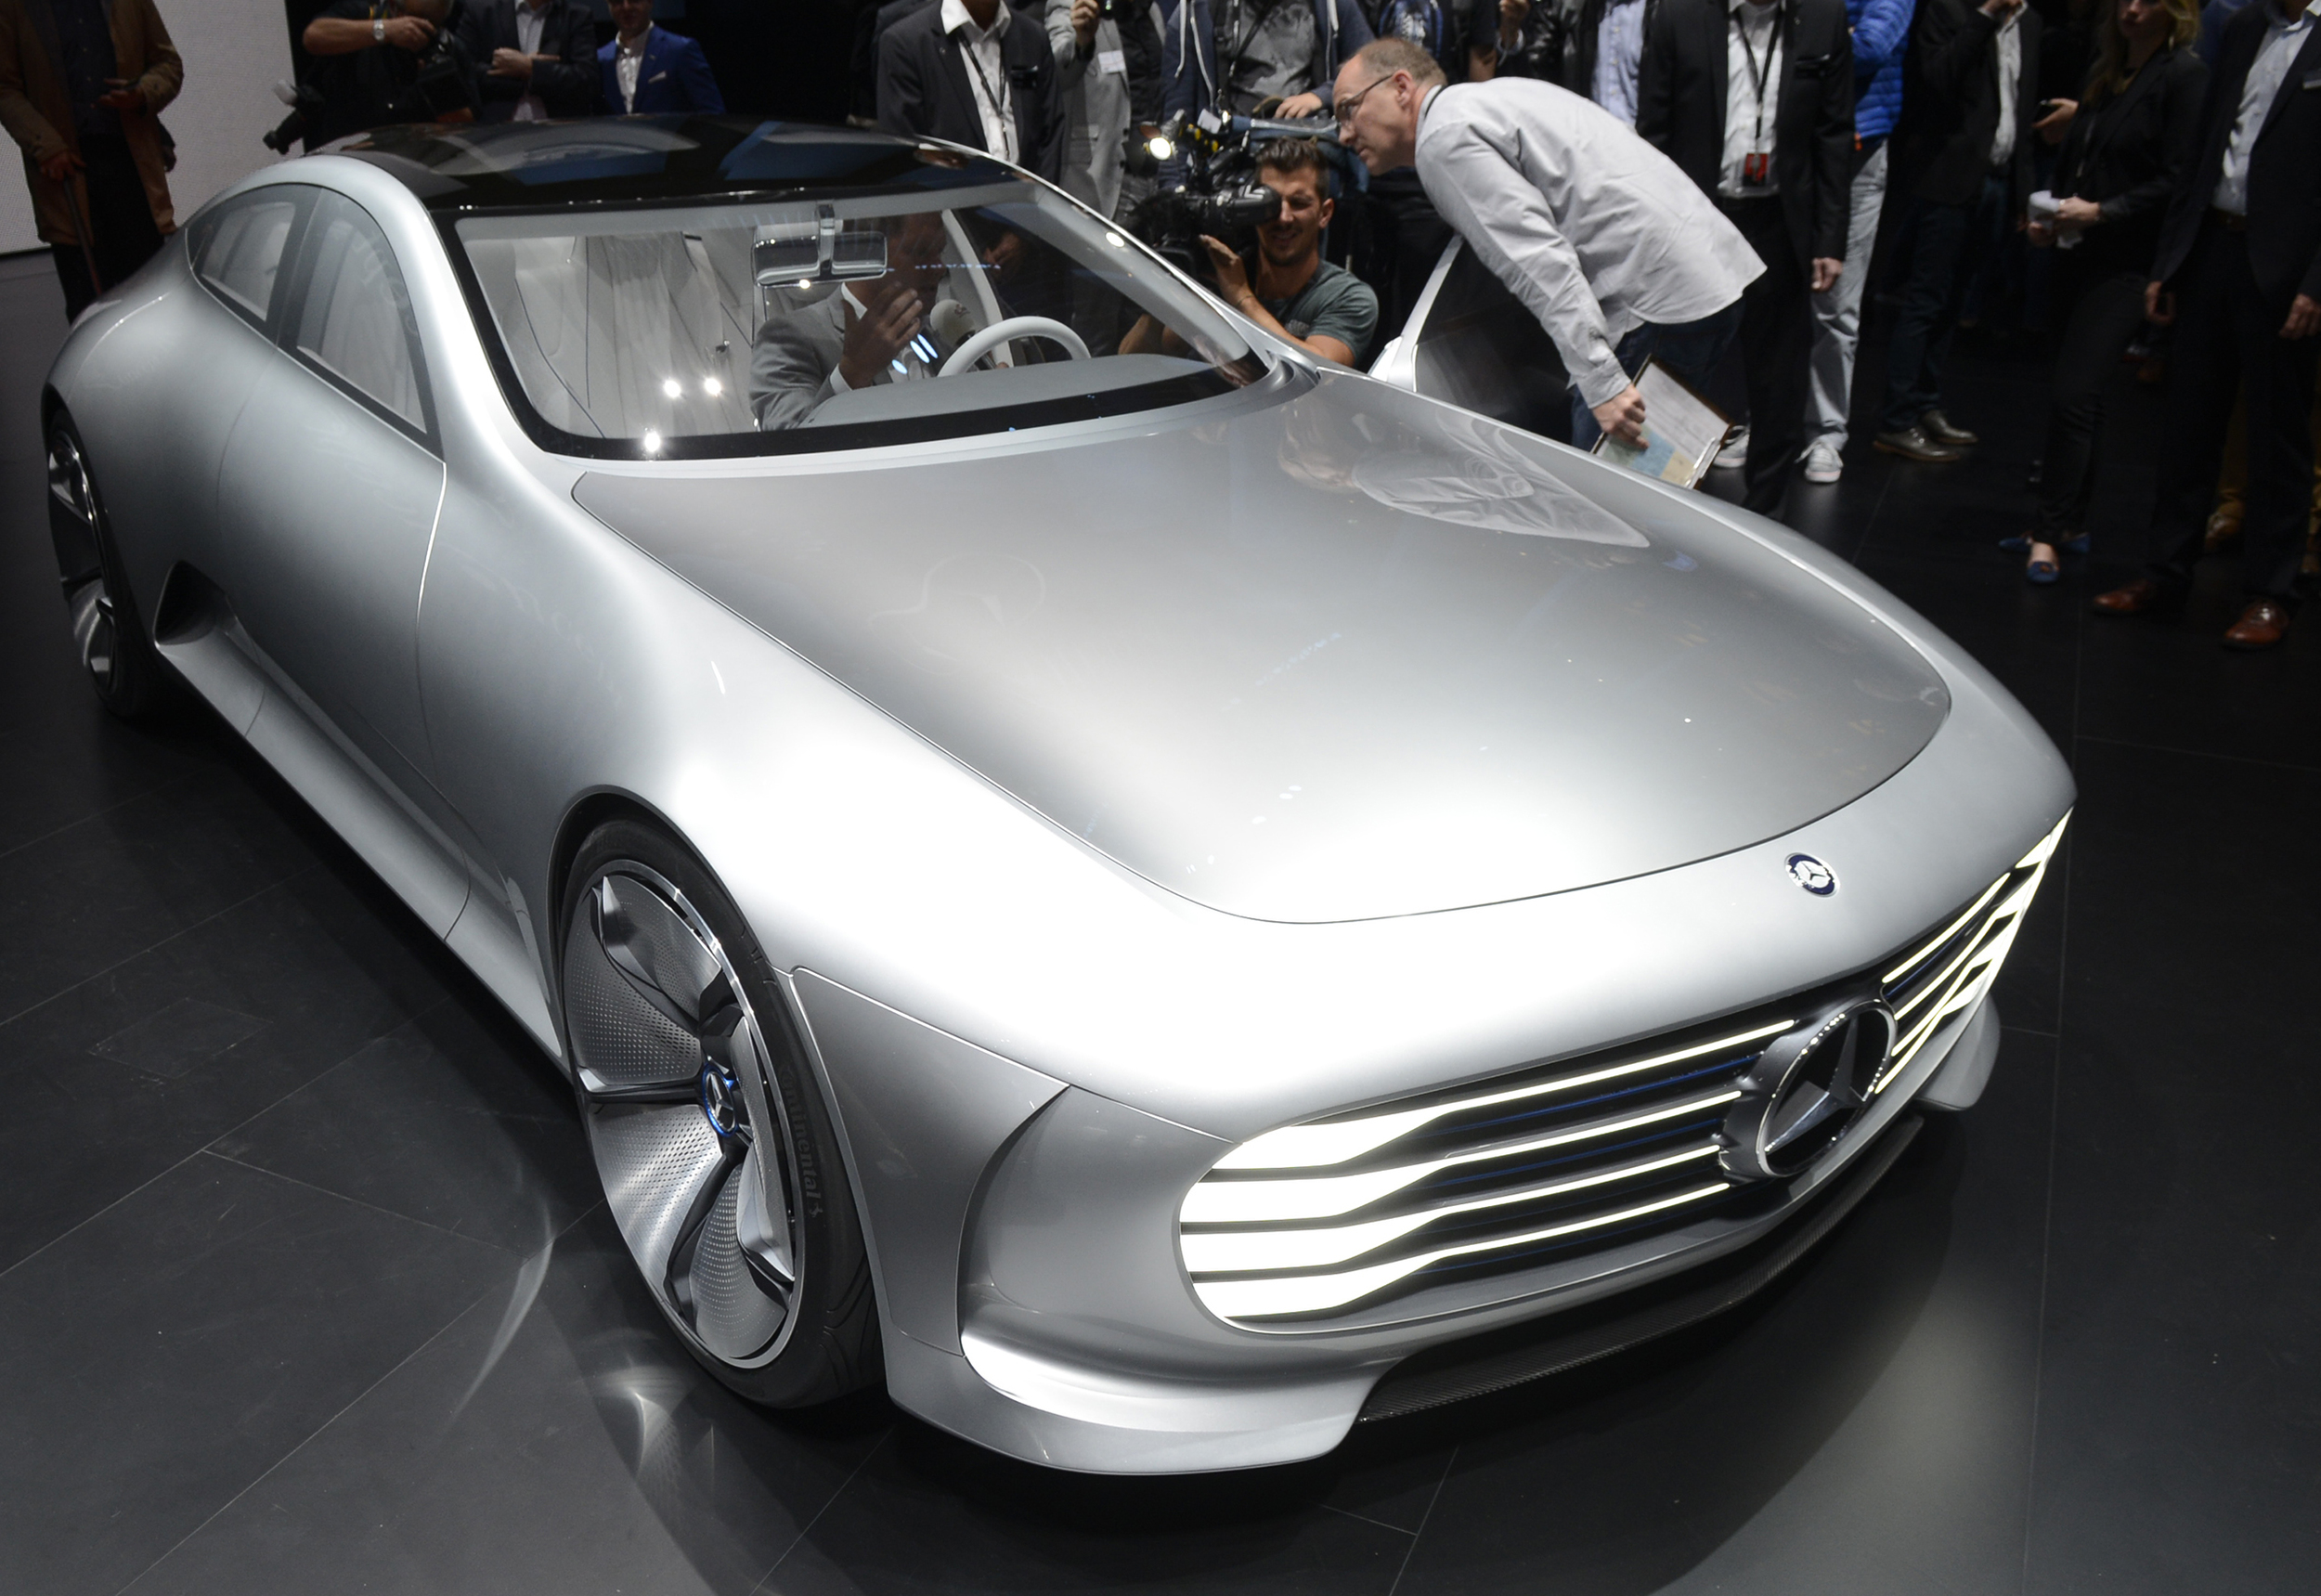 Mercedes reveals new Concept IAA